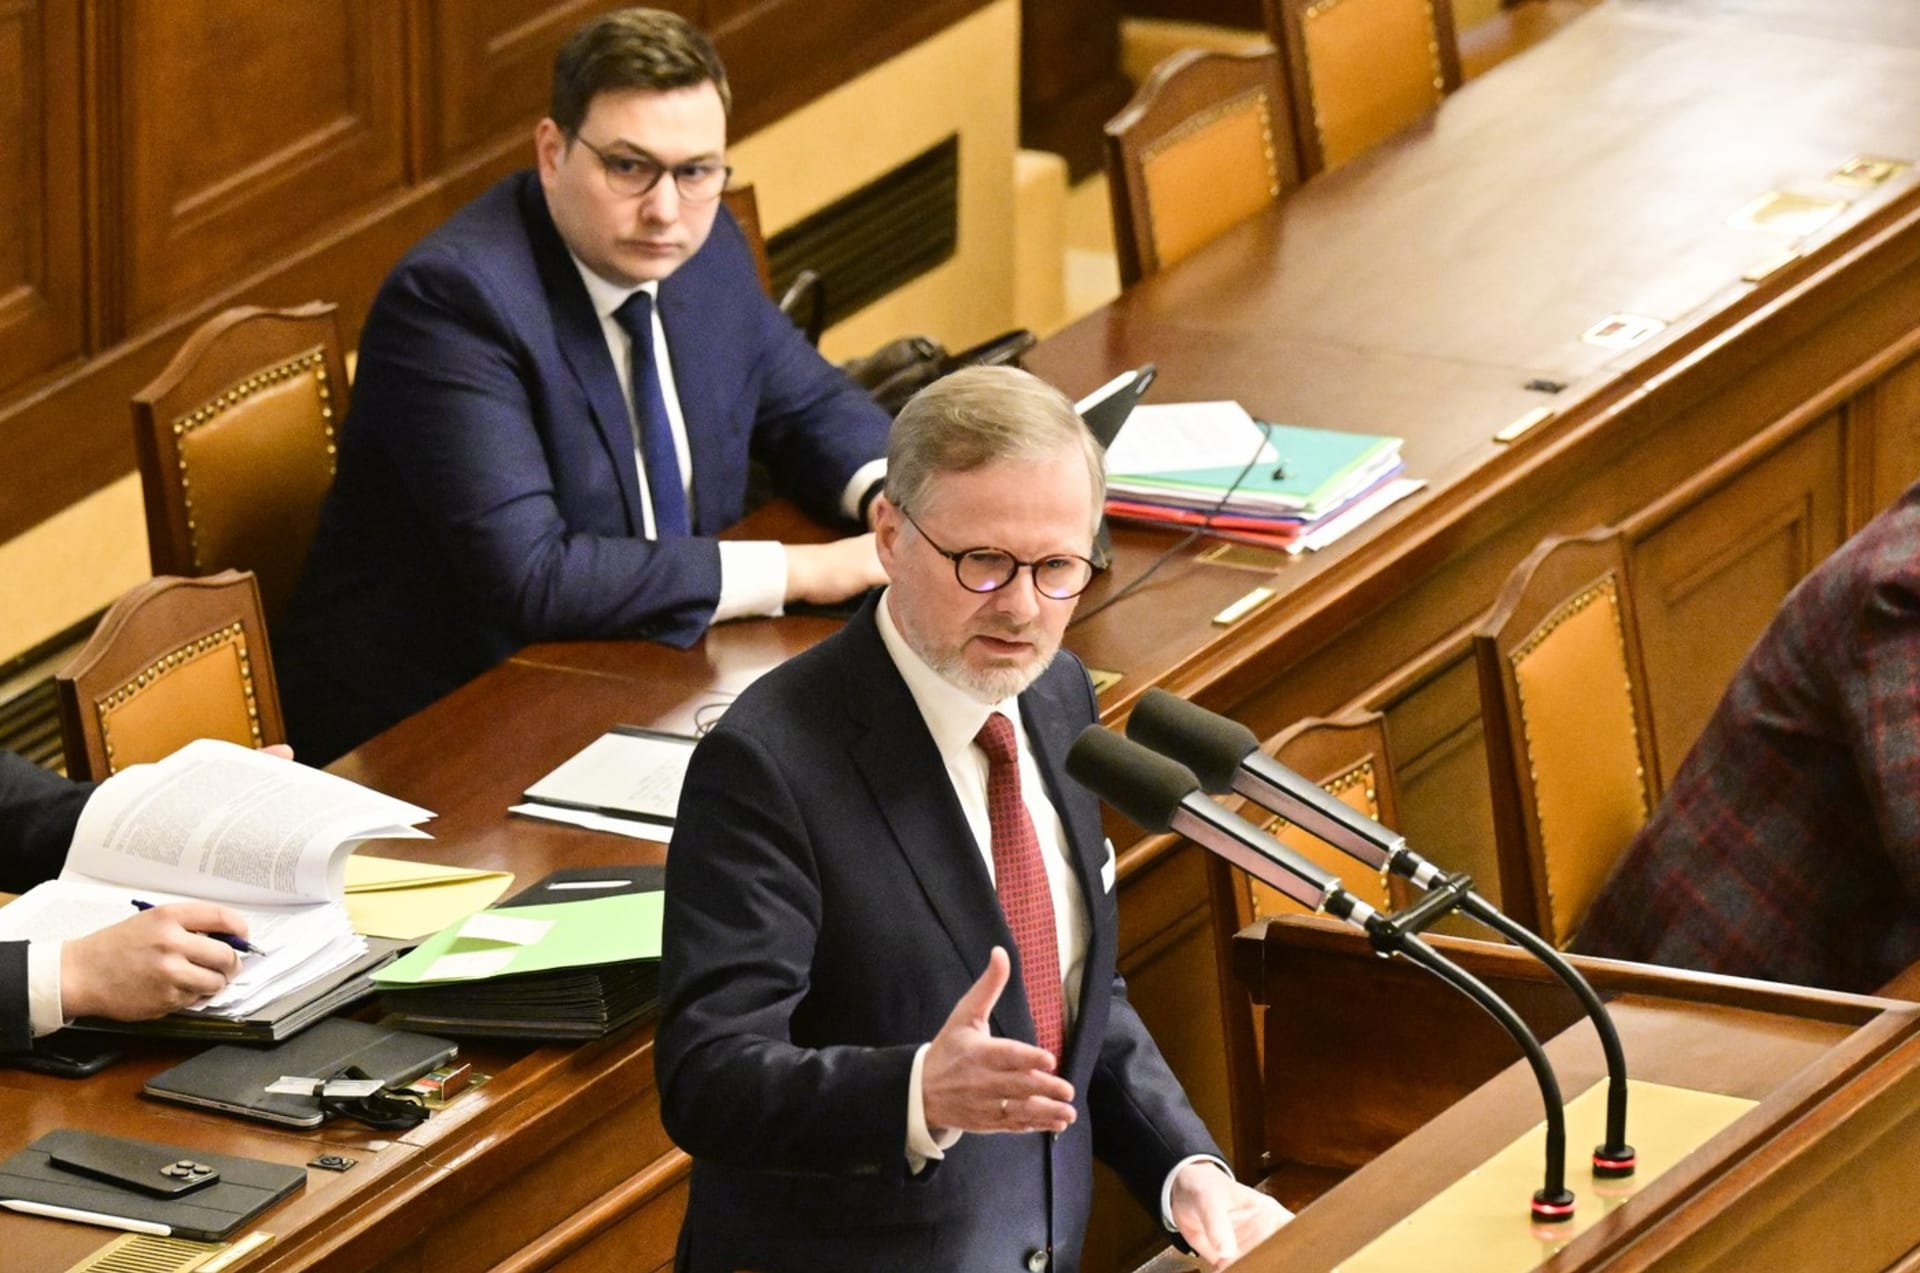 Politikem s nejmenší důvěrou občanů se podle průzkumu stal premiér Petr Fiala (ODS).